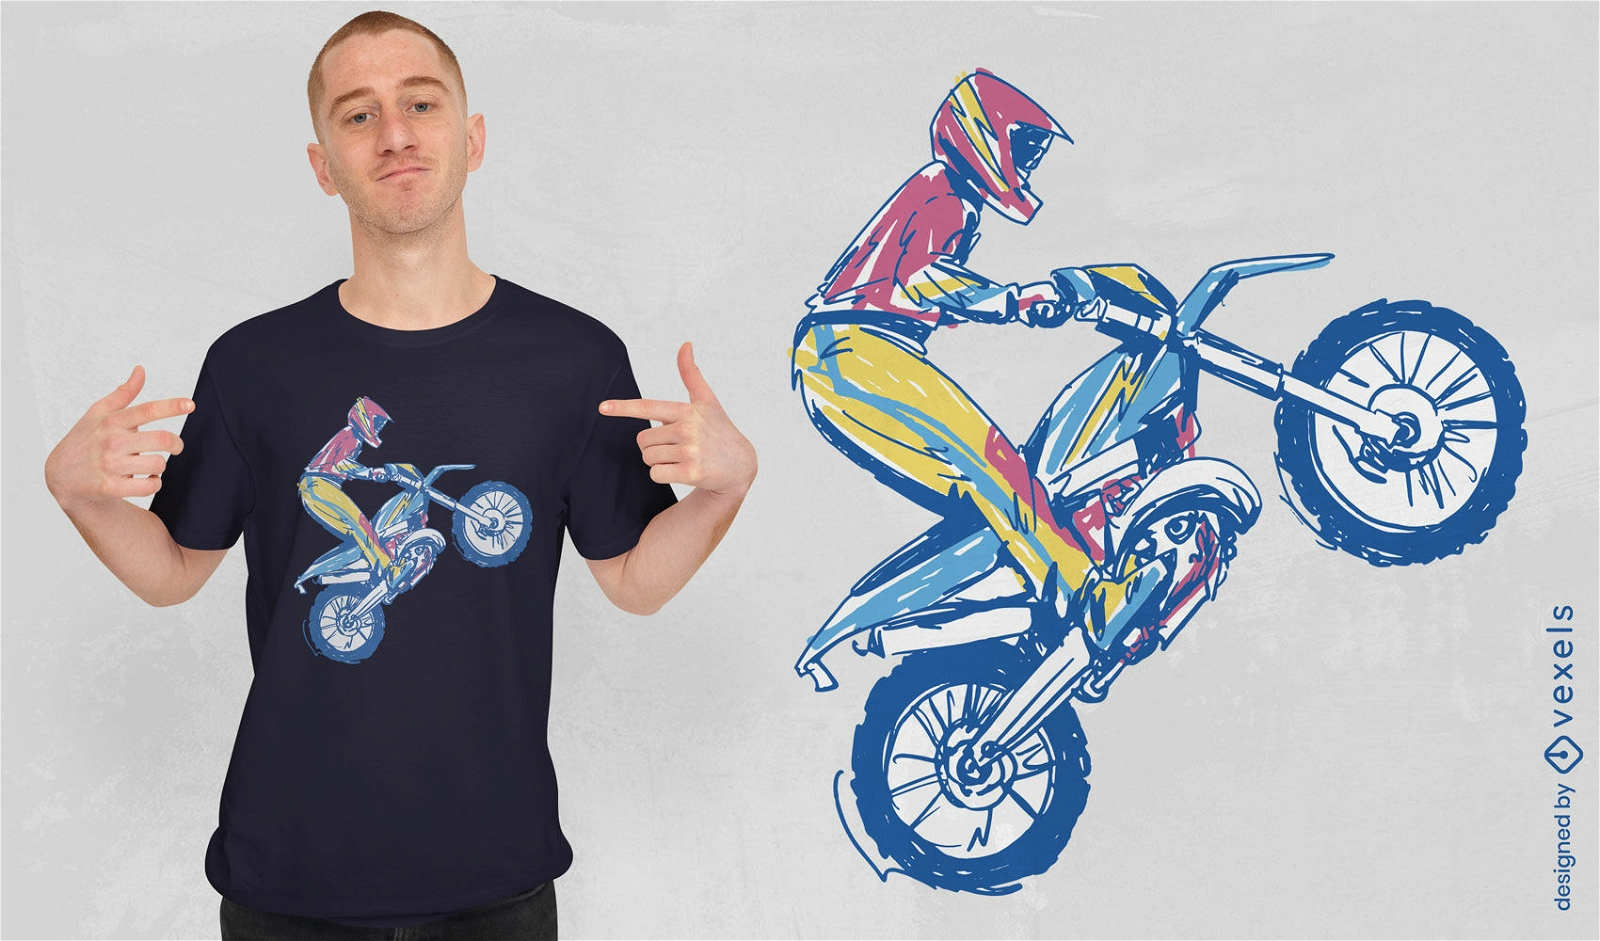 Diseño de camiseta de motocross bosquejado.